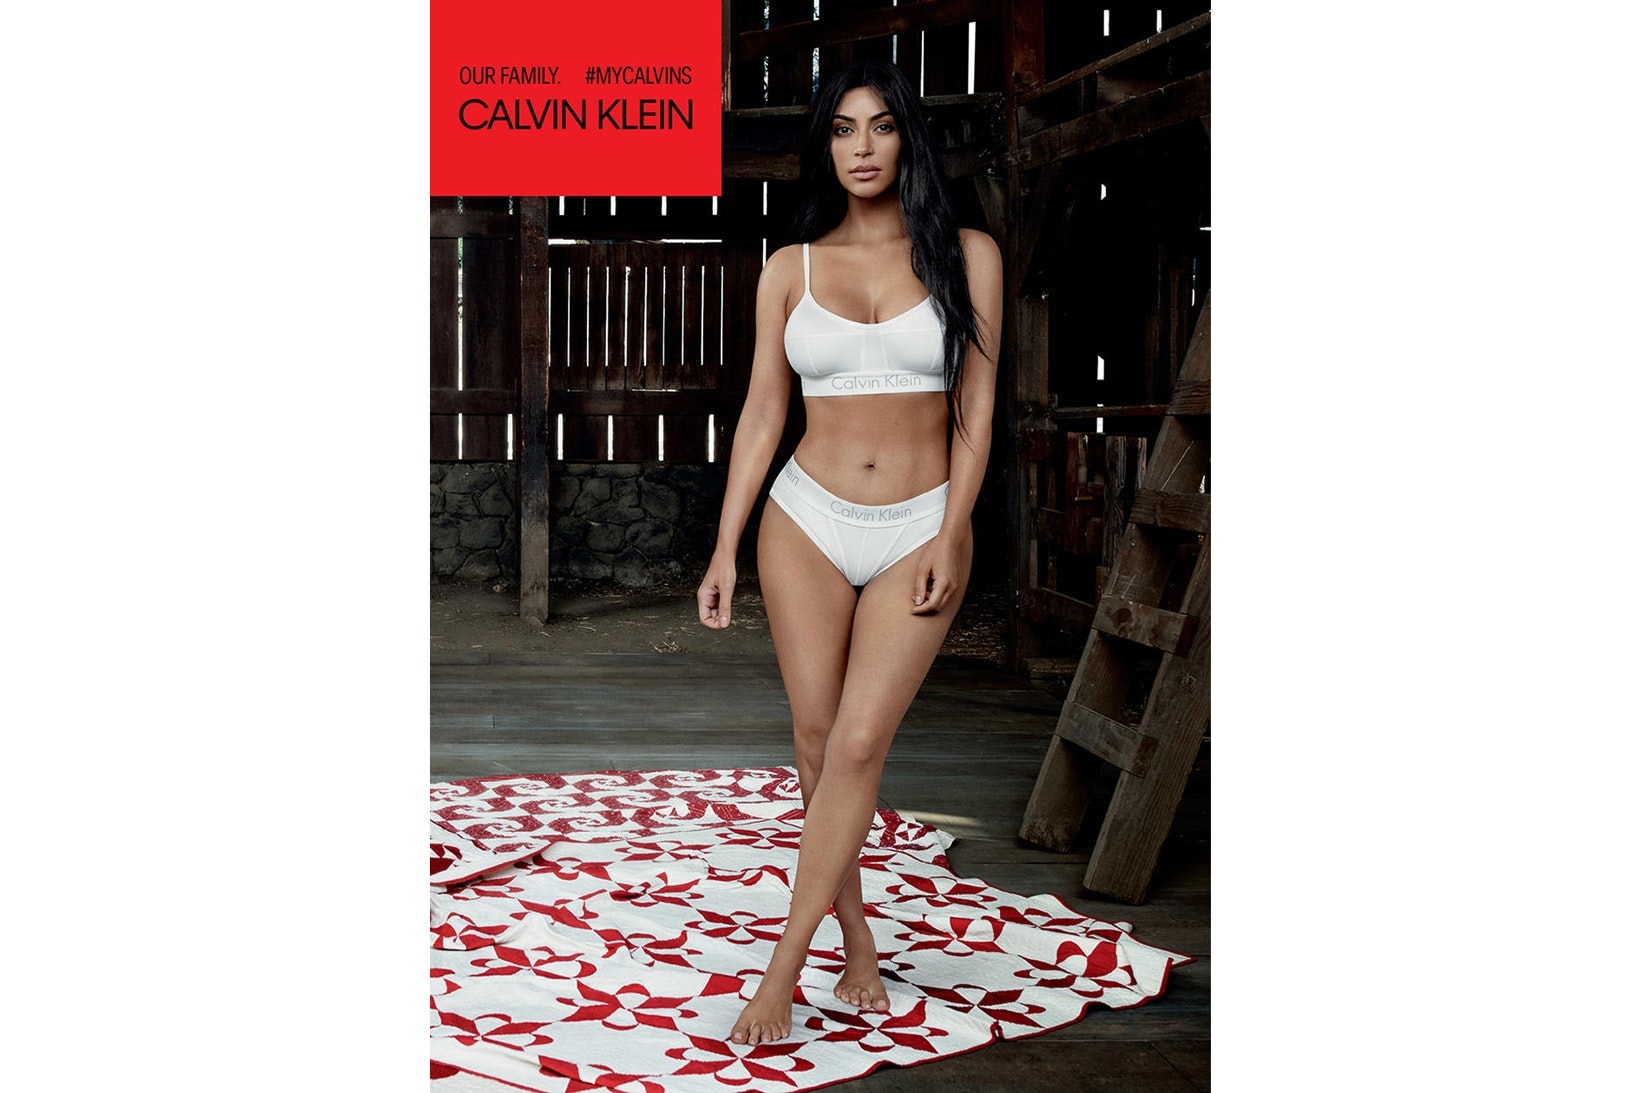 Kardashian-Jenner 五姐妹出鏡 Calvin Klein 最新宣傳大片